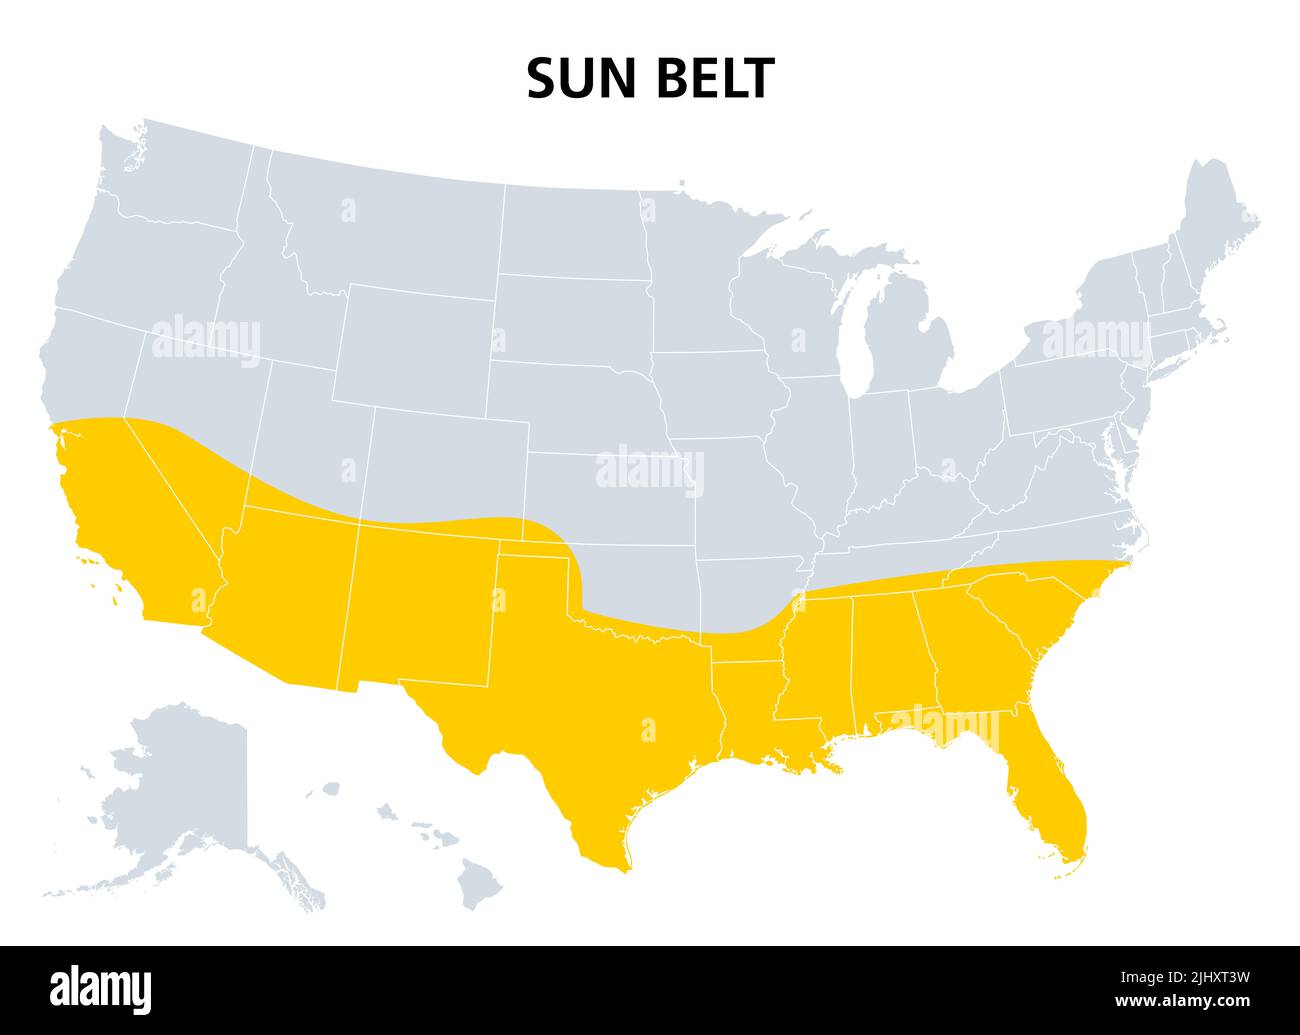 Cinturón del Sol de los Estados Unidos, mapa político. Región con clima desértico, subtropical y tropical, que comprende los estados más australes. Foto de stock